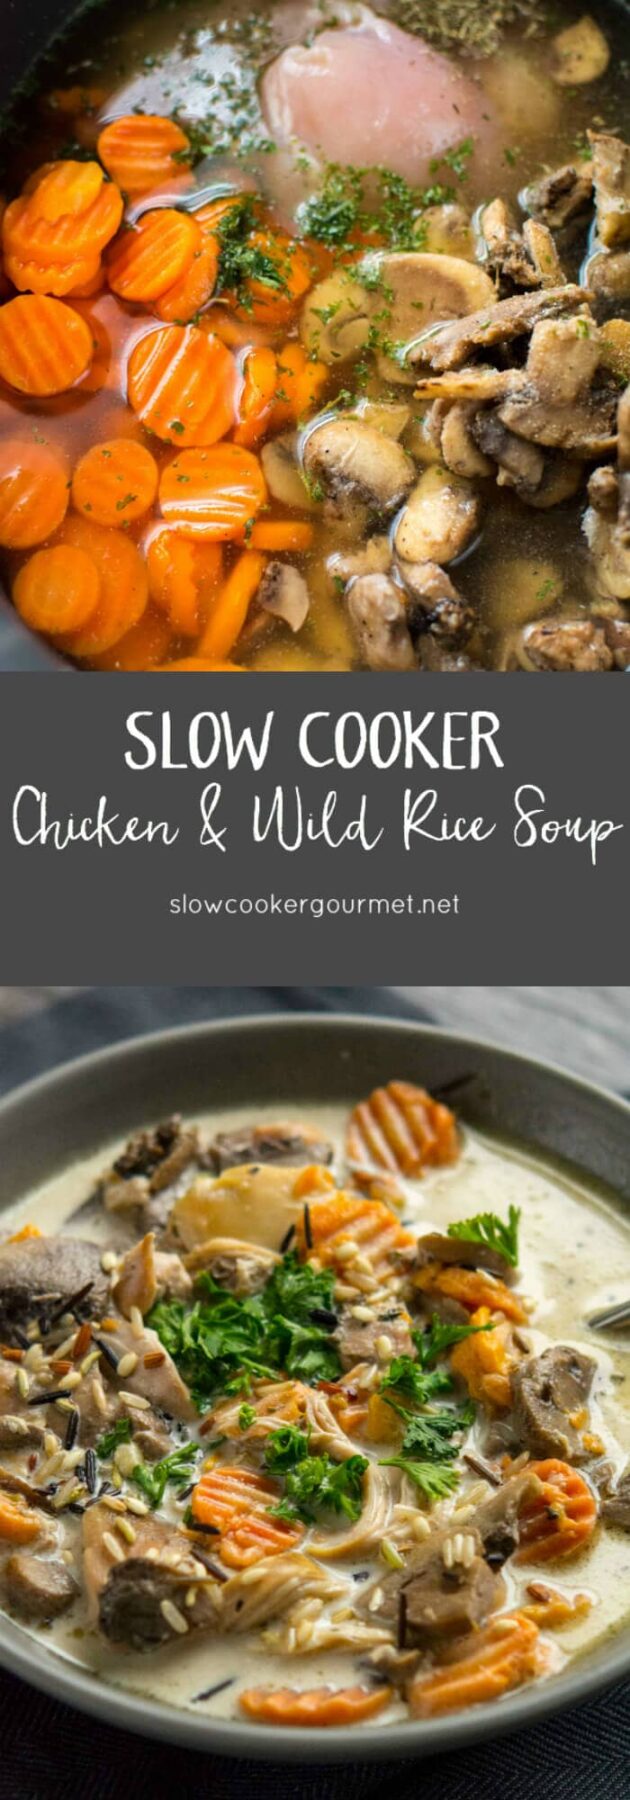 Chicken & Wild Rice Soup